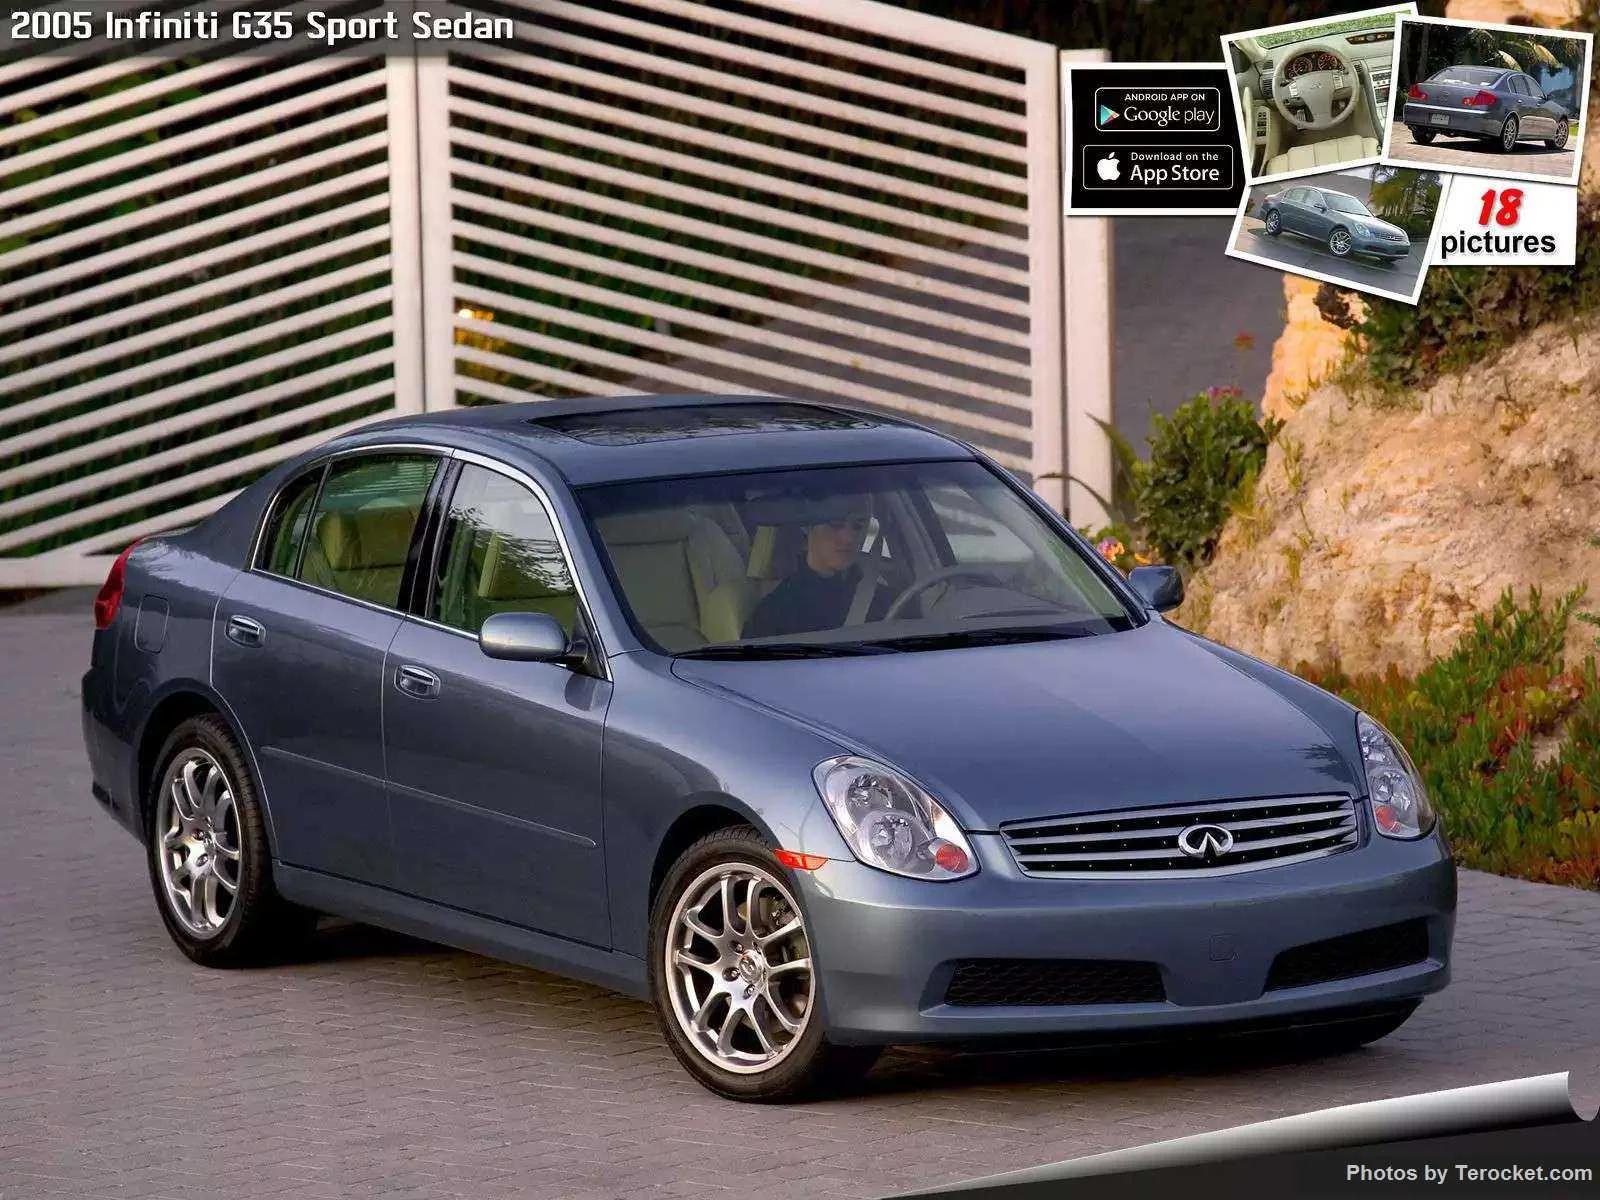 Hình ảnh xe ô tô Infiniti G35 Sport Sedan 2005 & nội ngoại thất